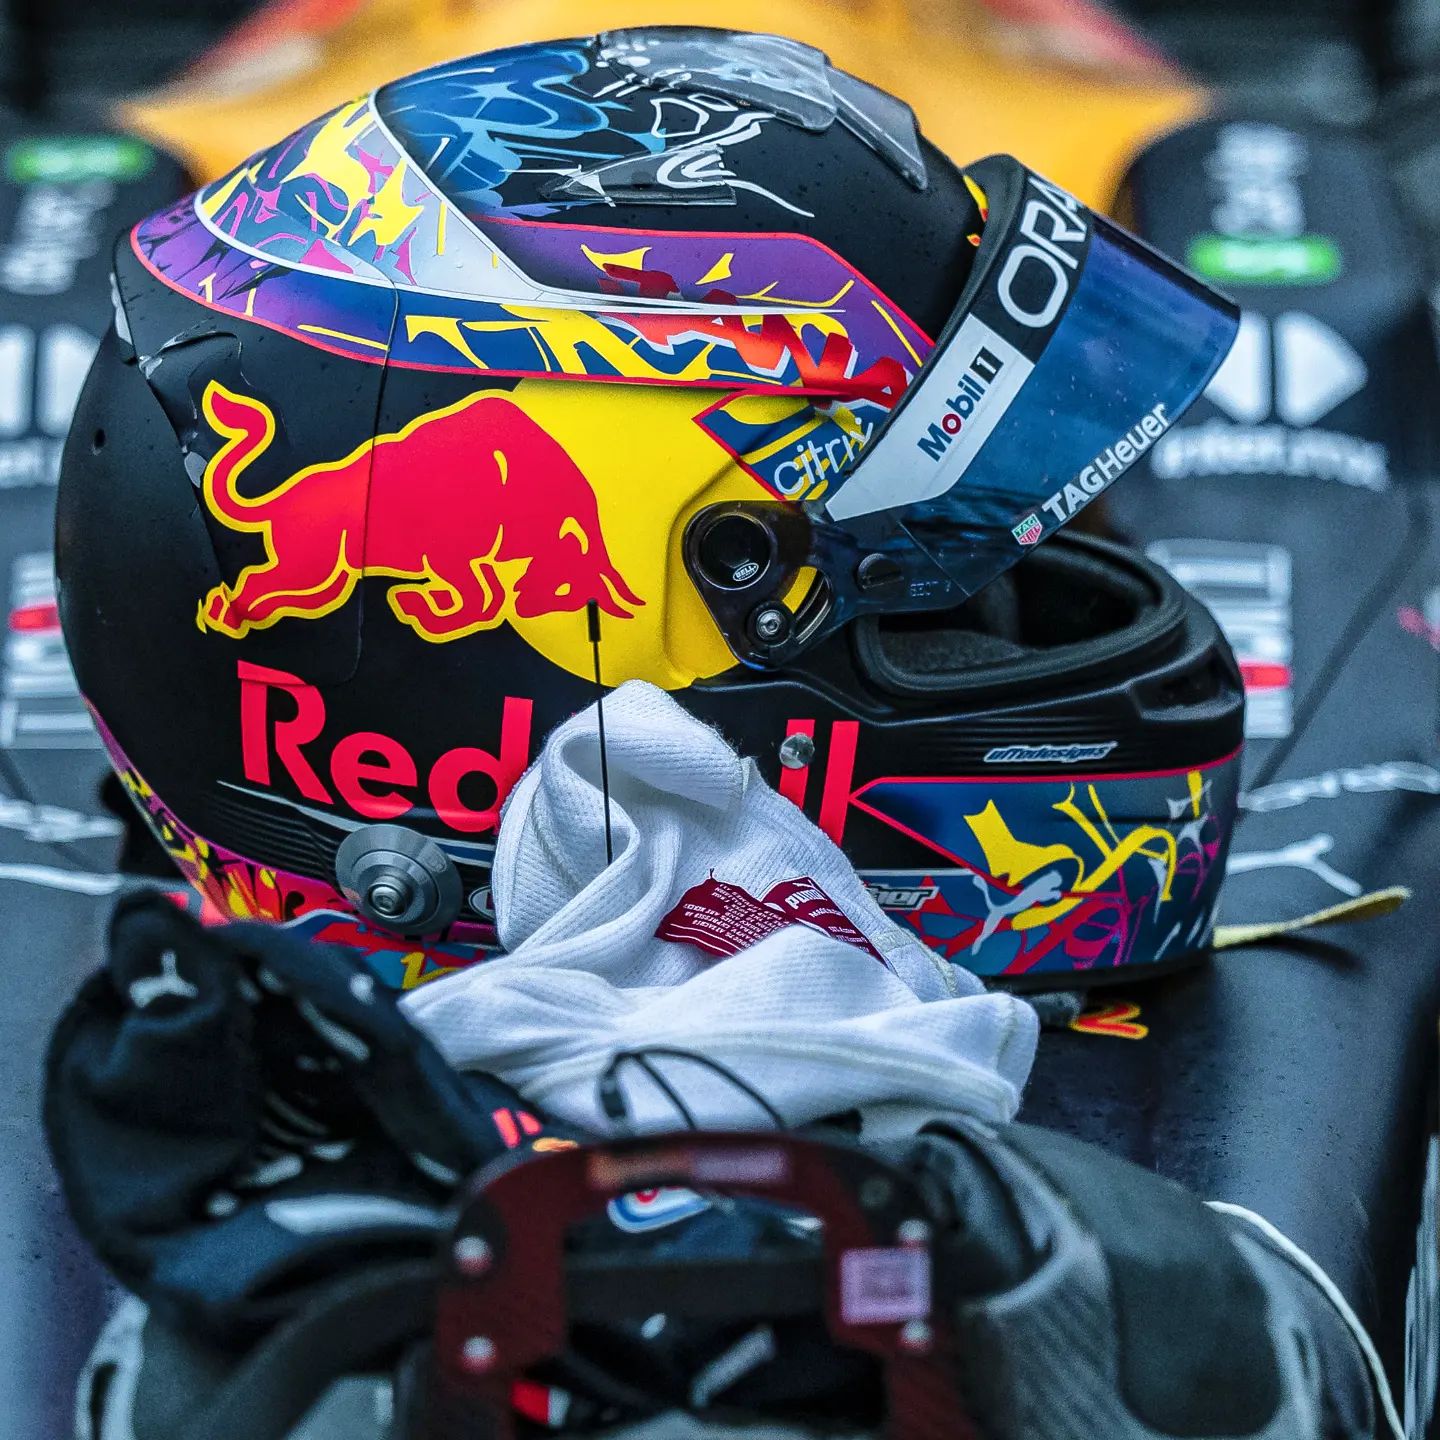 F1 Helmets en Twitter: "Helmet of Red Bull showrun driver Patrick  Friesacher 📸 Red Bull Content Pool #f1 #formula1 #friesacher  https://t.co/Q2lk9PEJ01" / Twitter